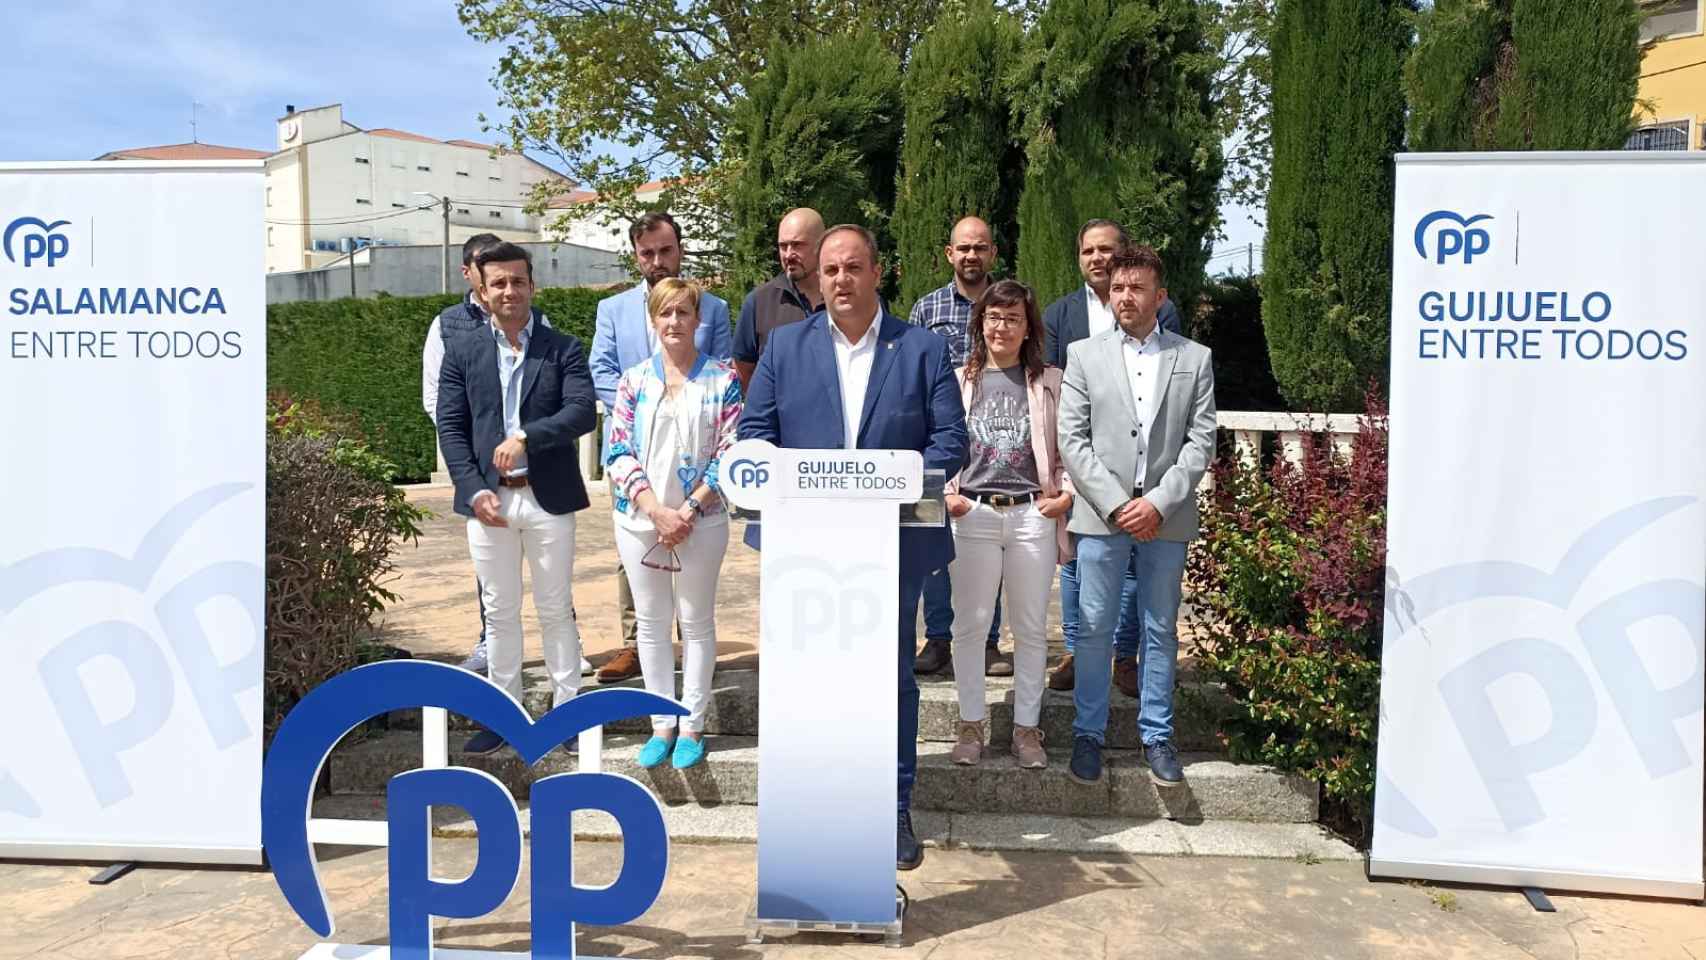 El alcalde y candidato a la reelección, Roberto Martín, desgrana el programa electoral del PP